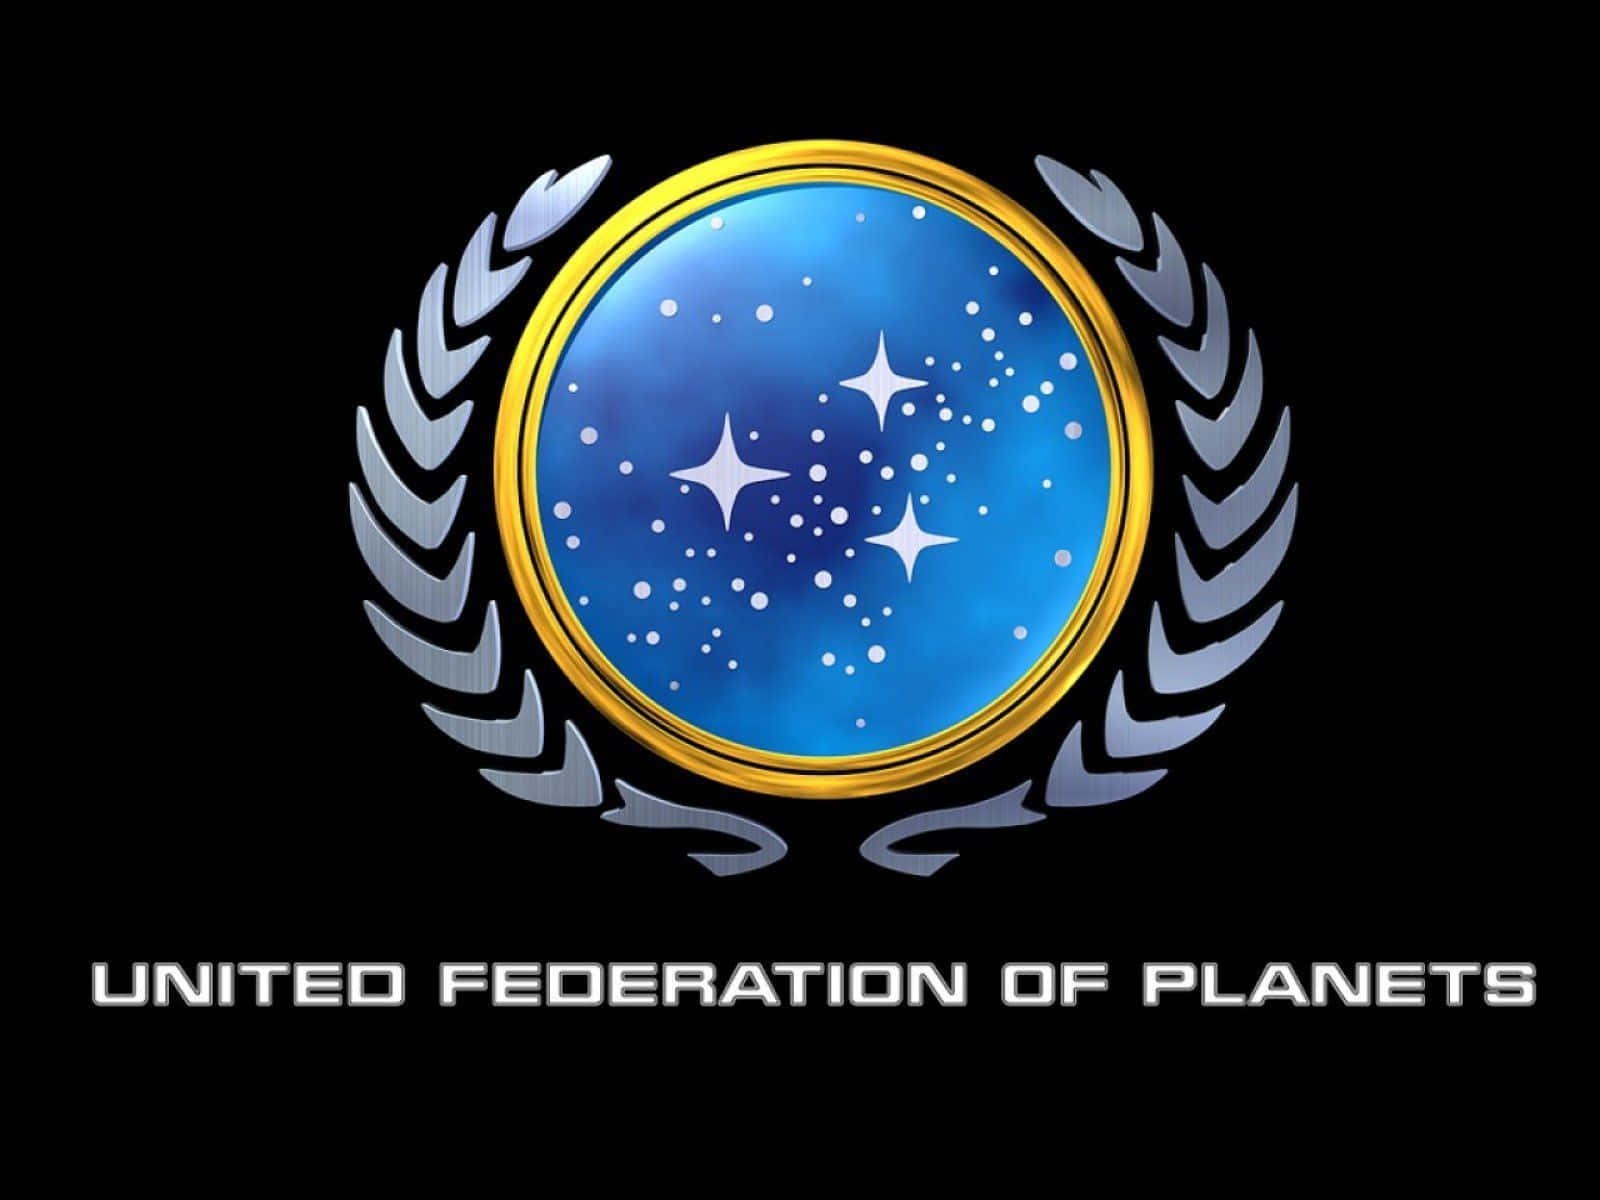 ¡embárcateen Una Aventura En El Espacio Profundo Con El Fondo De Zoom Gratuito De Star Trek!